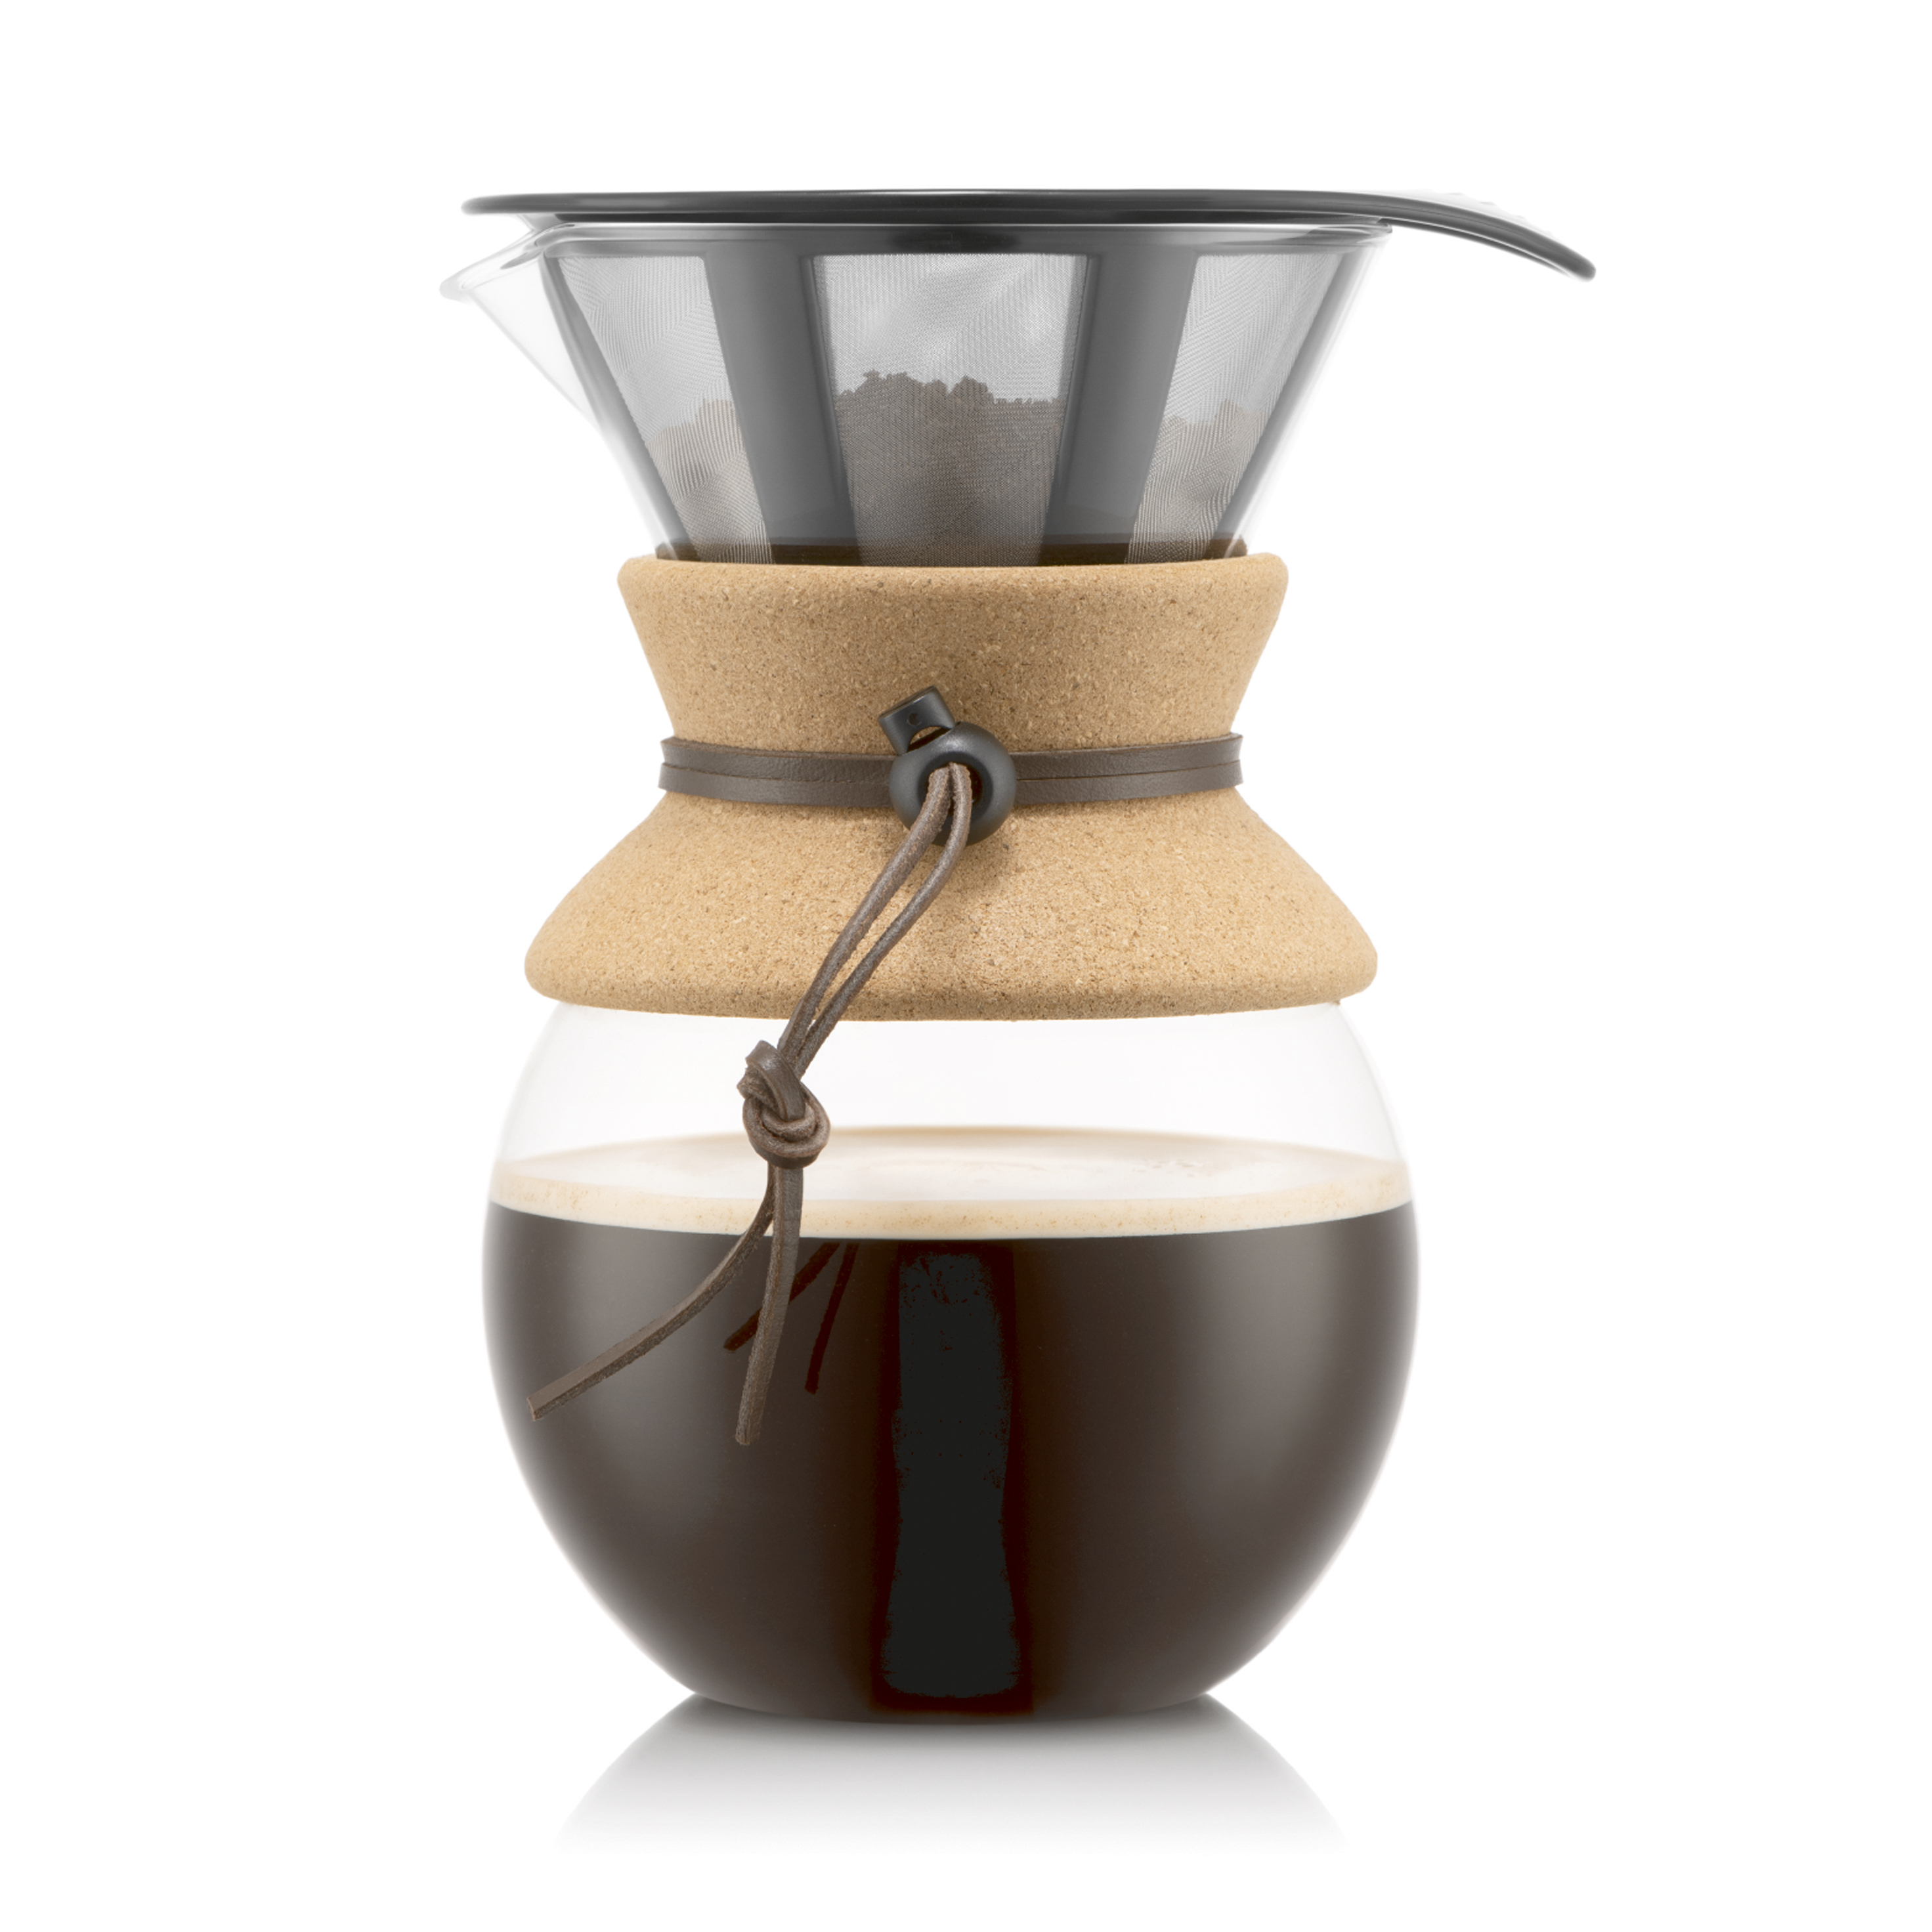 Percolatrice per caffè Pour Over con filtro permanente da Bodum 